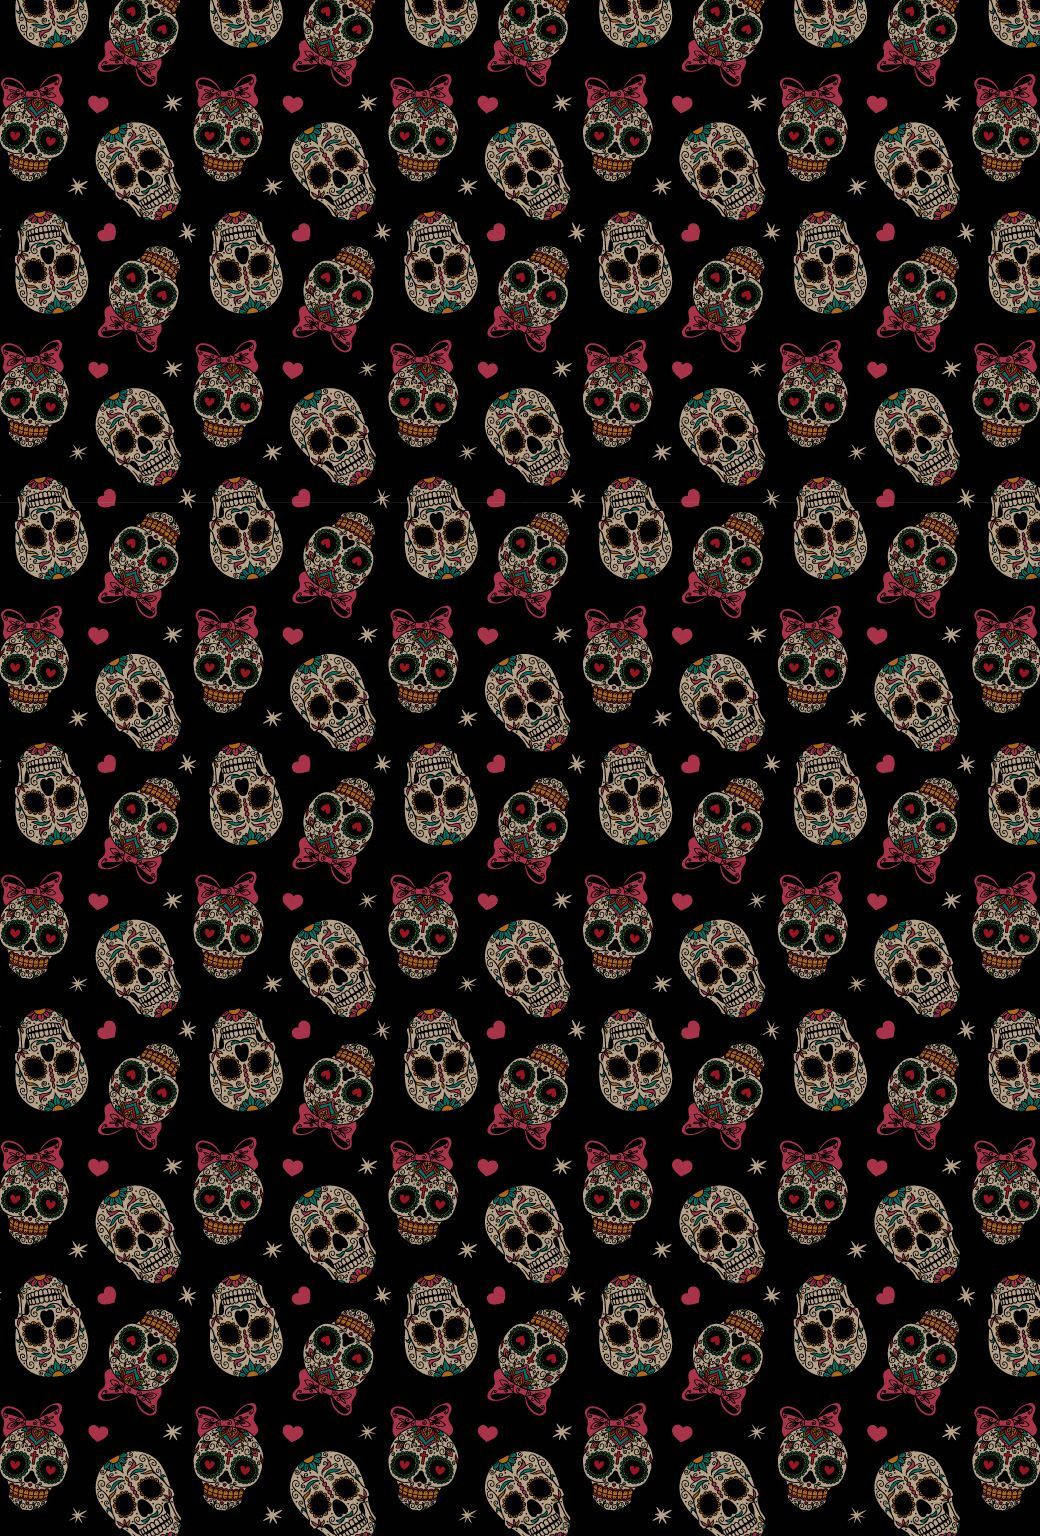 Crowded Sugar Skulls Background